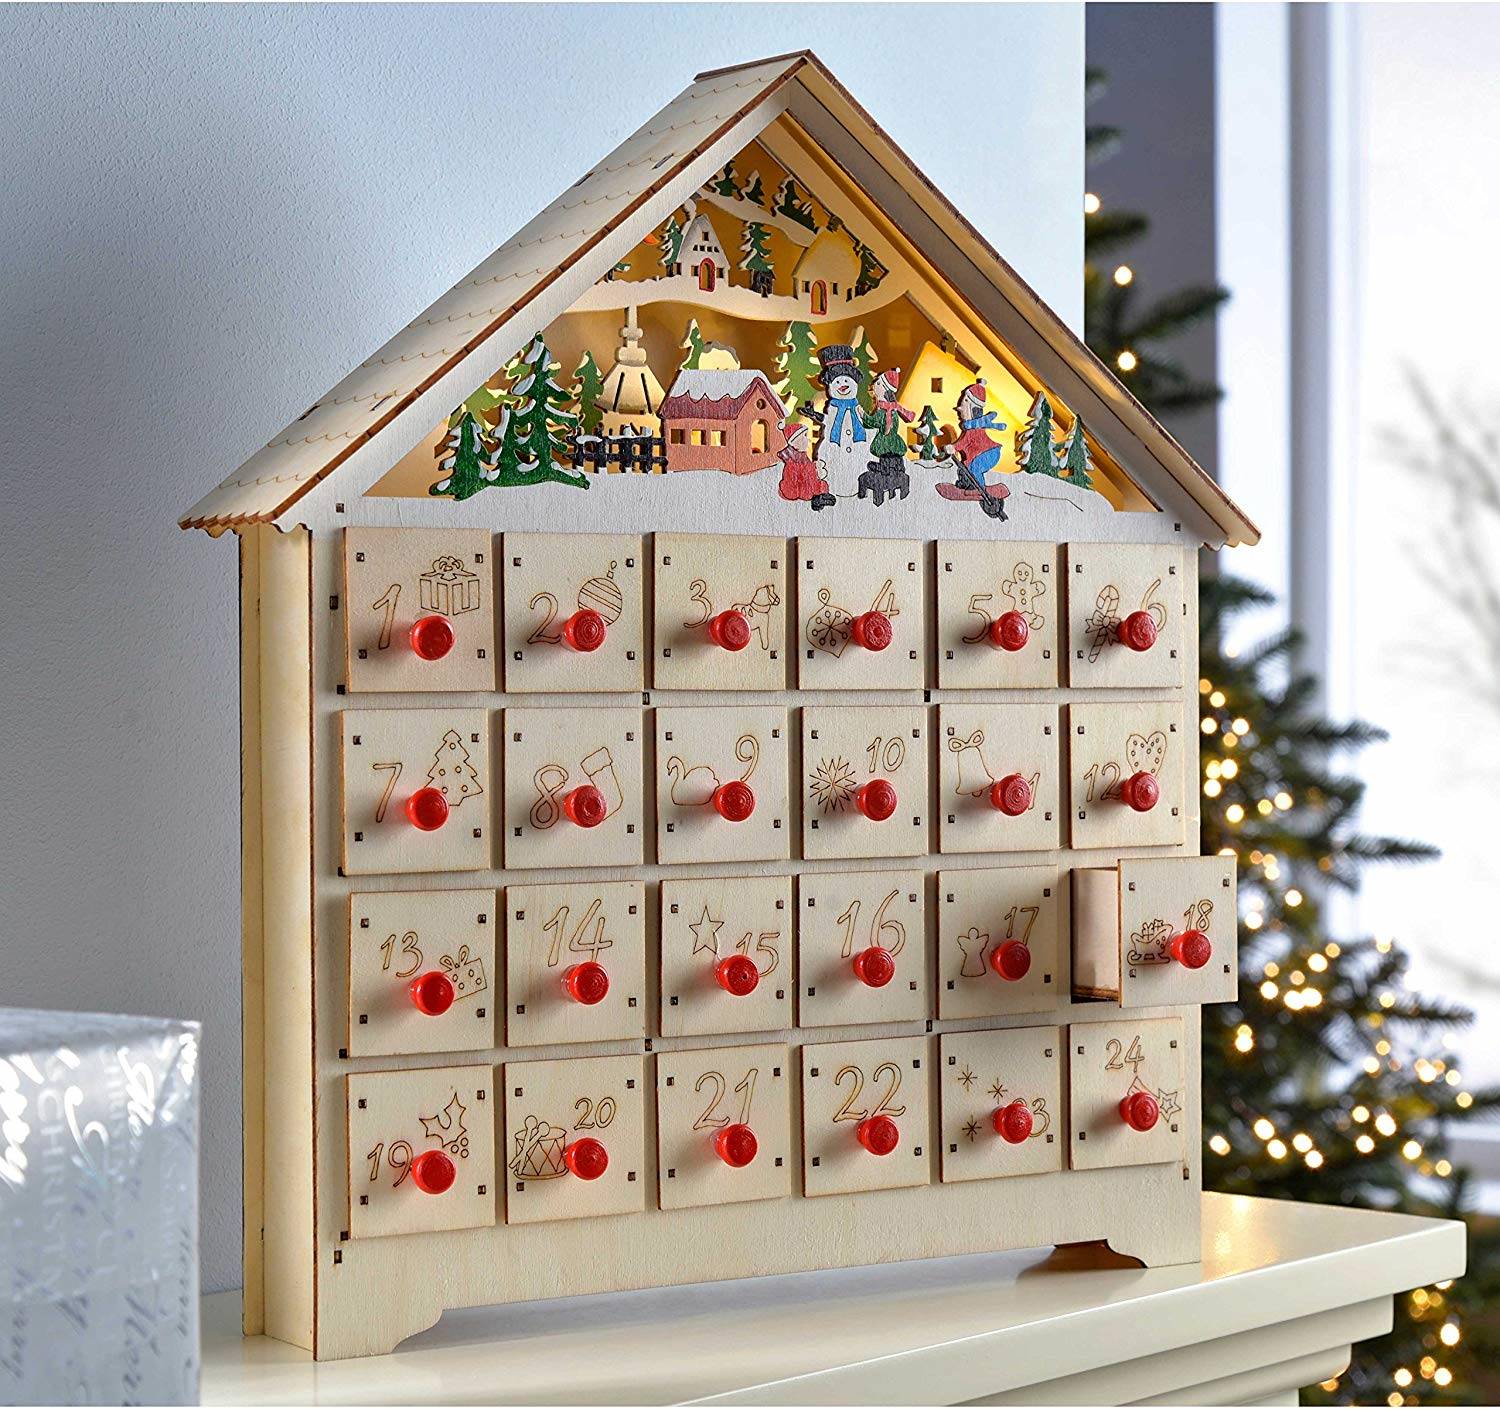 Fansport Calendario de Navidad Multi-Uso Decorativo de Madera Calendario de Adviento con 24 cajones Suministros de Fiesta para decoración de Ventanas 